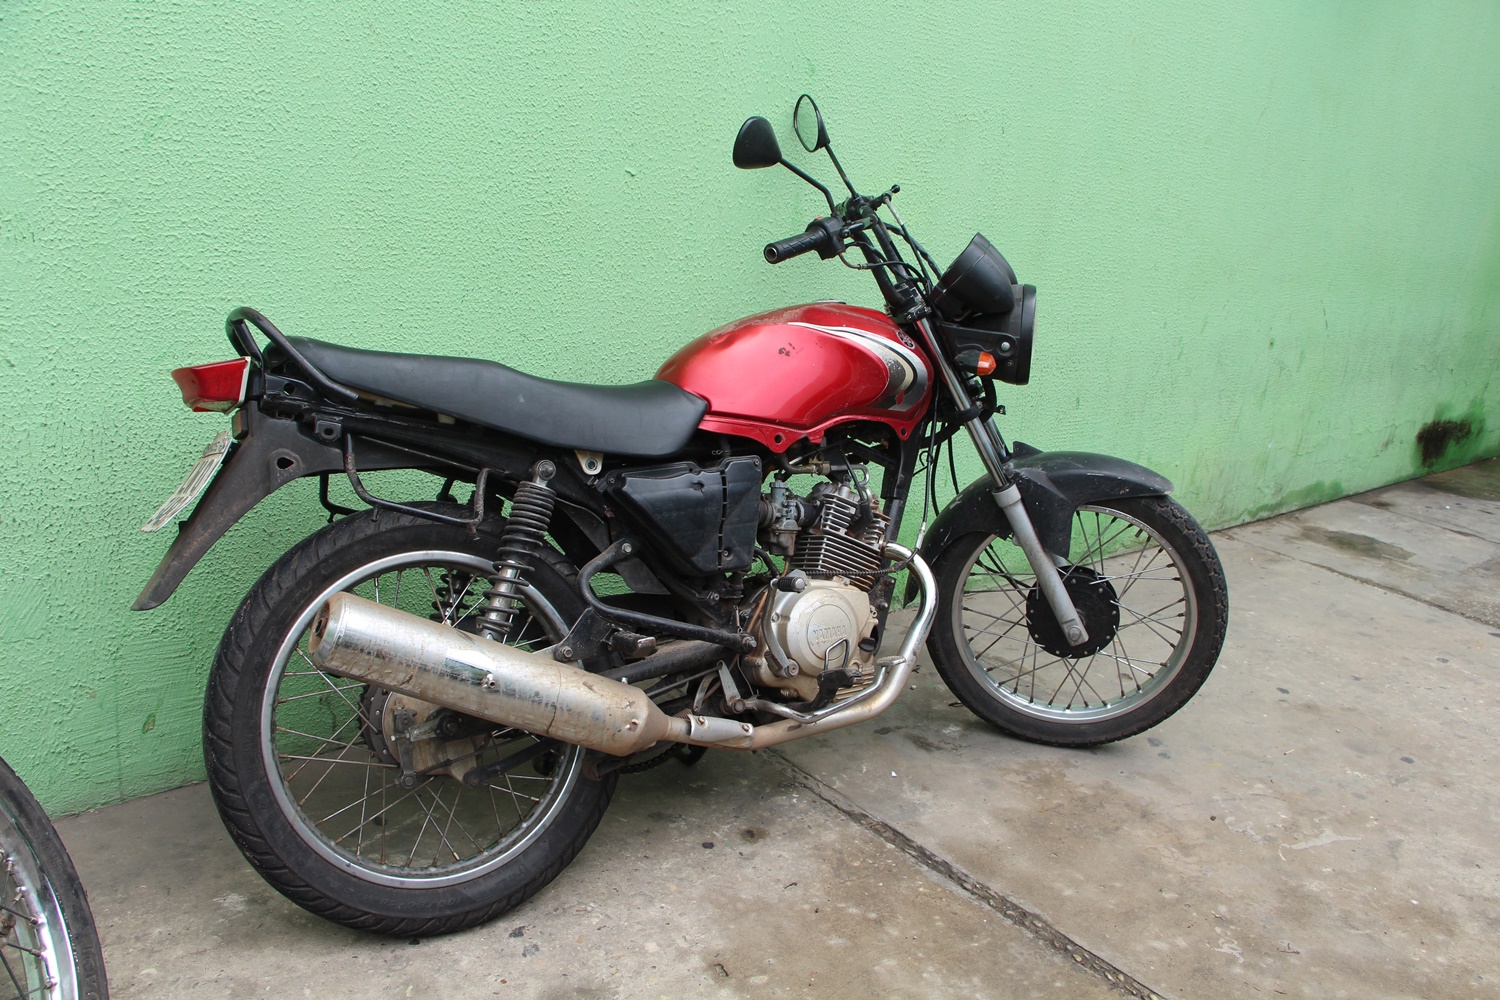 Motocicleta utilizada pela dupla na tentativa de latrocínio